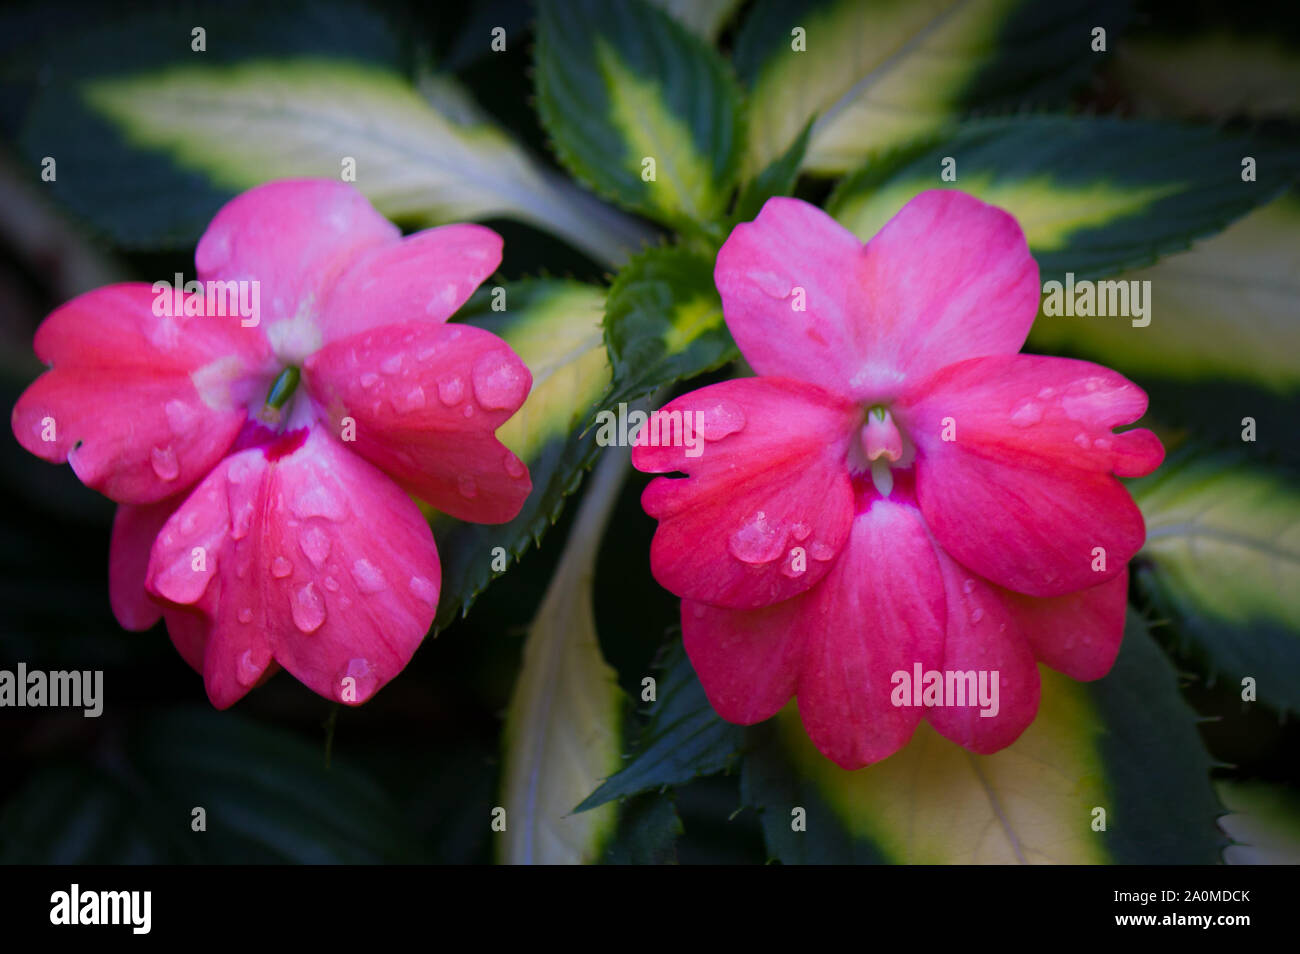 Zwei Pink impatiens Blumen mit Wassertropfen auf Blüten. Unterart der Balsaminaceae Familie. Diese Blumen kann in vielen verschiedenen Farben auftreten. Stockfoto